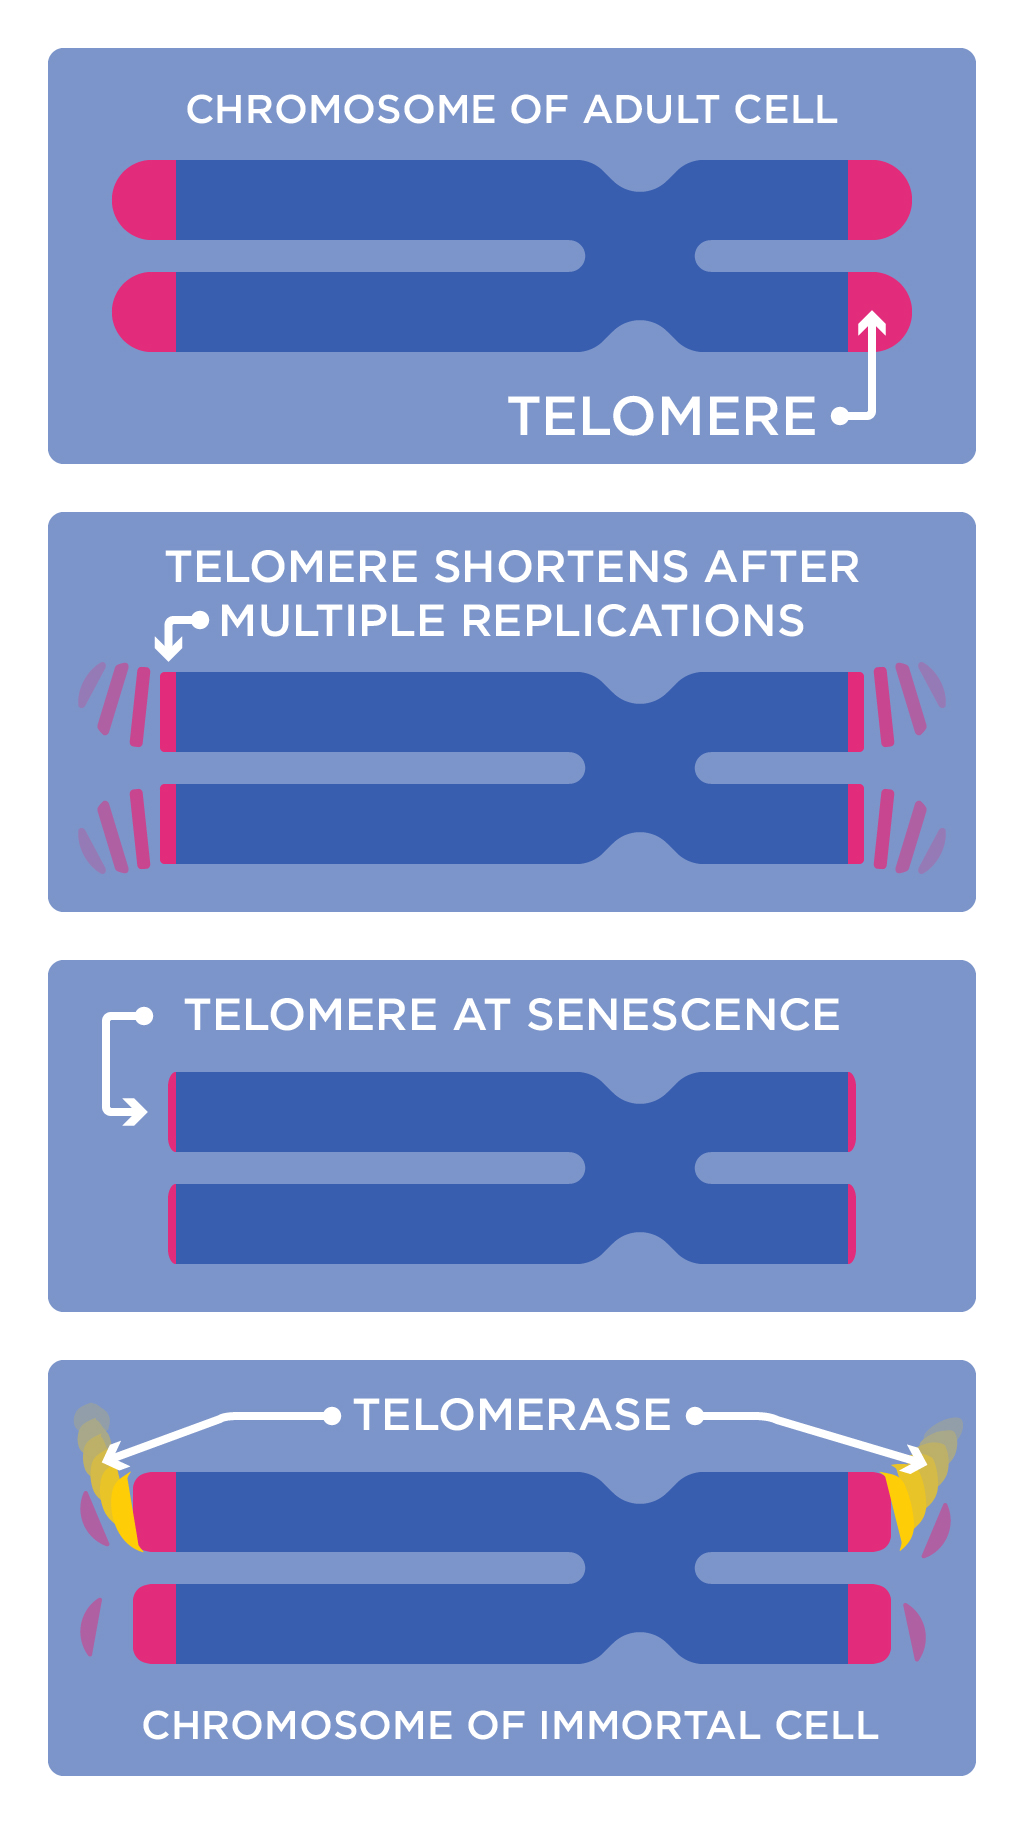 Diagram showing telomere shortening